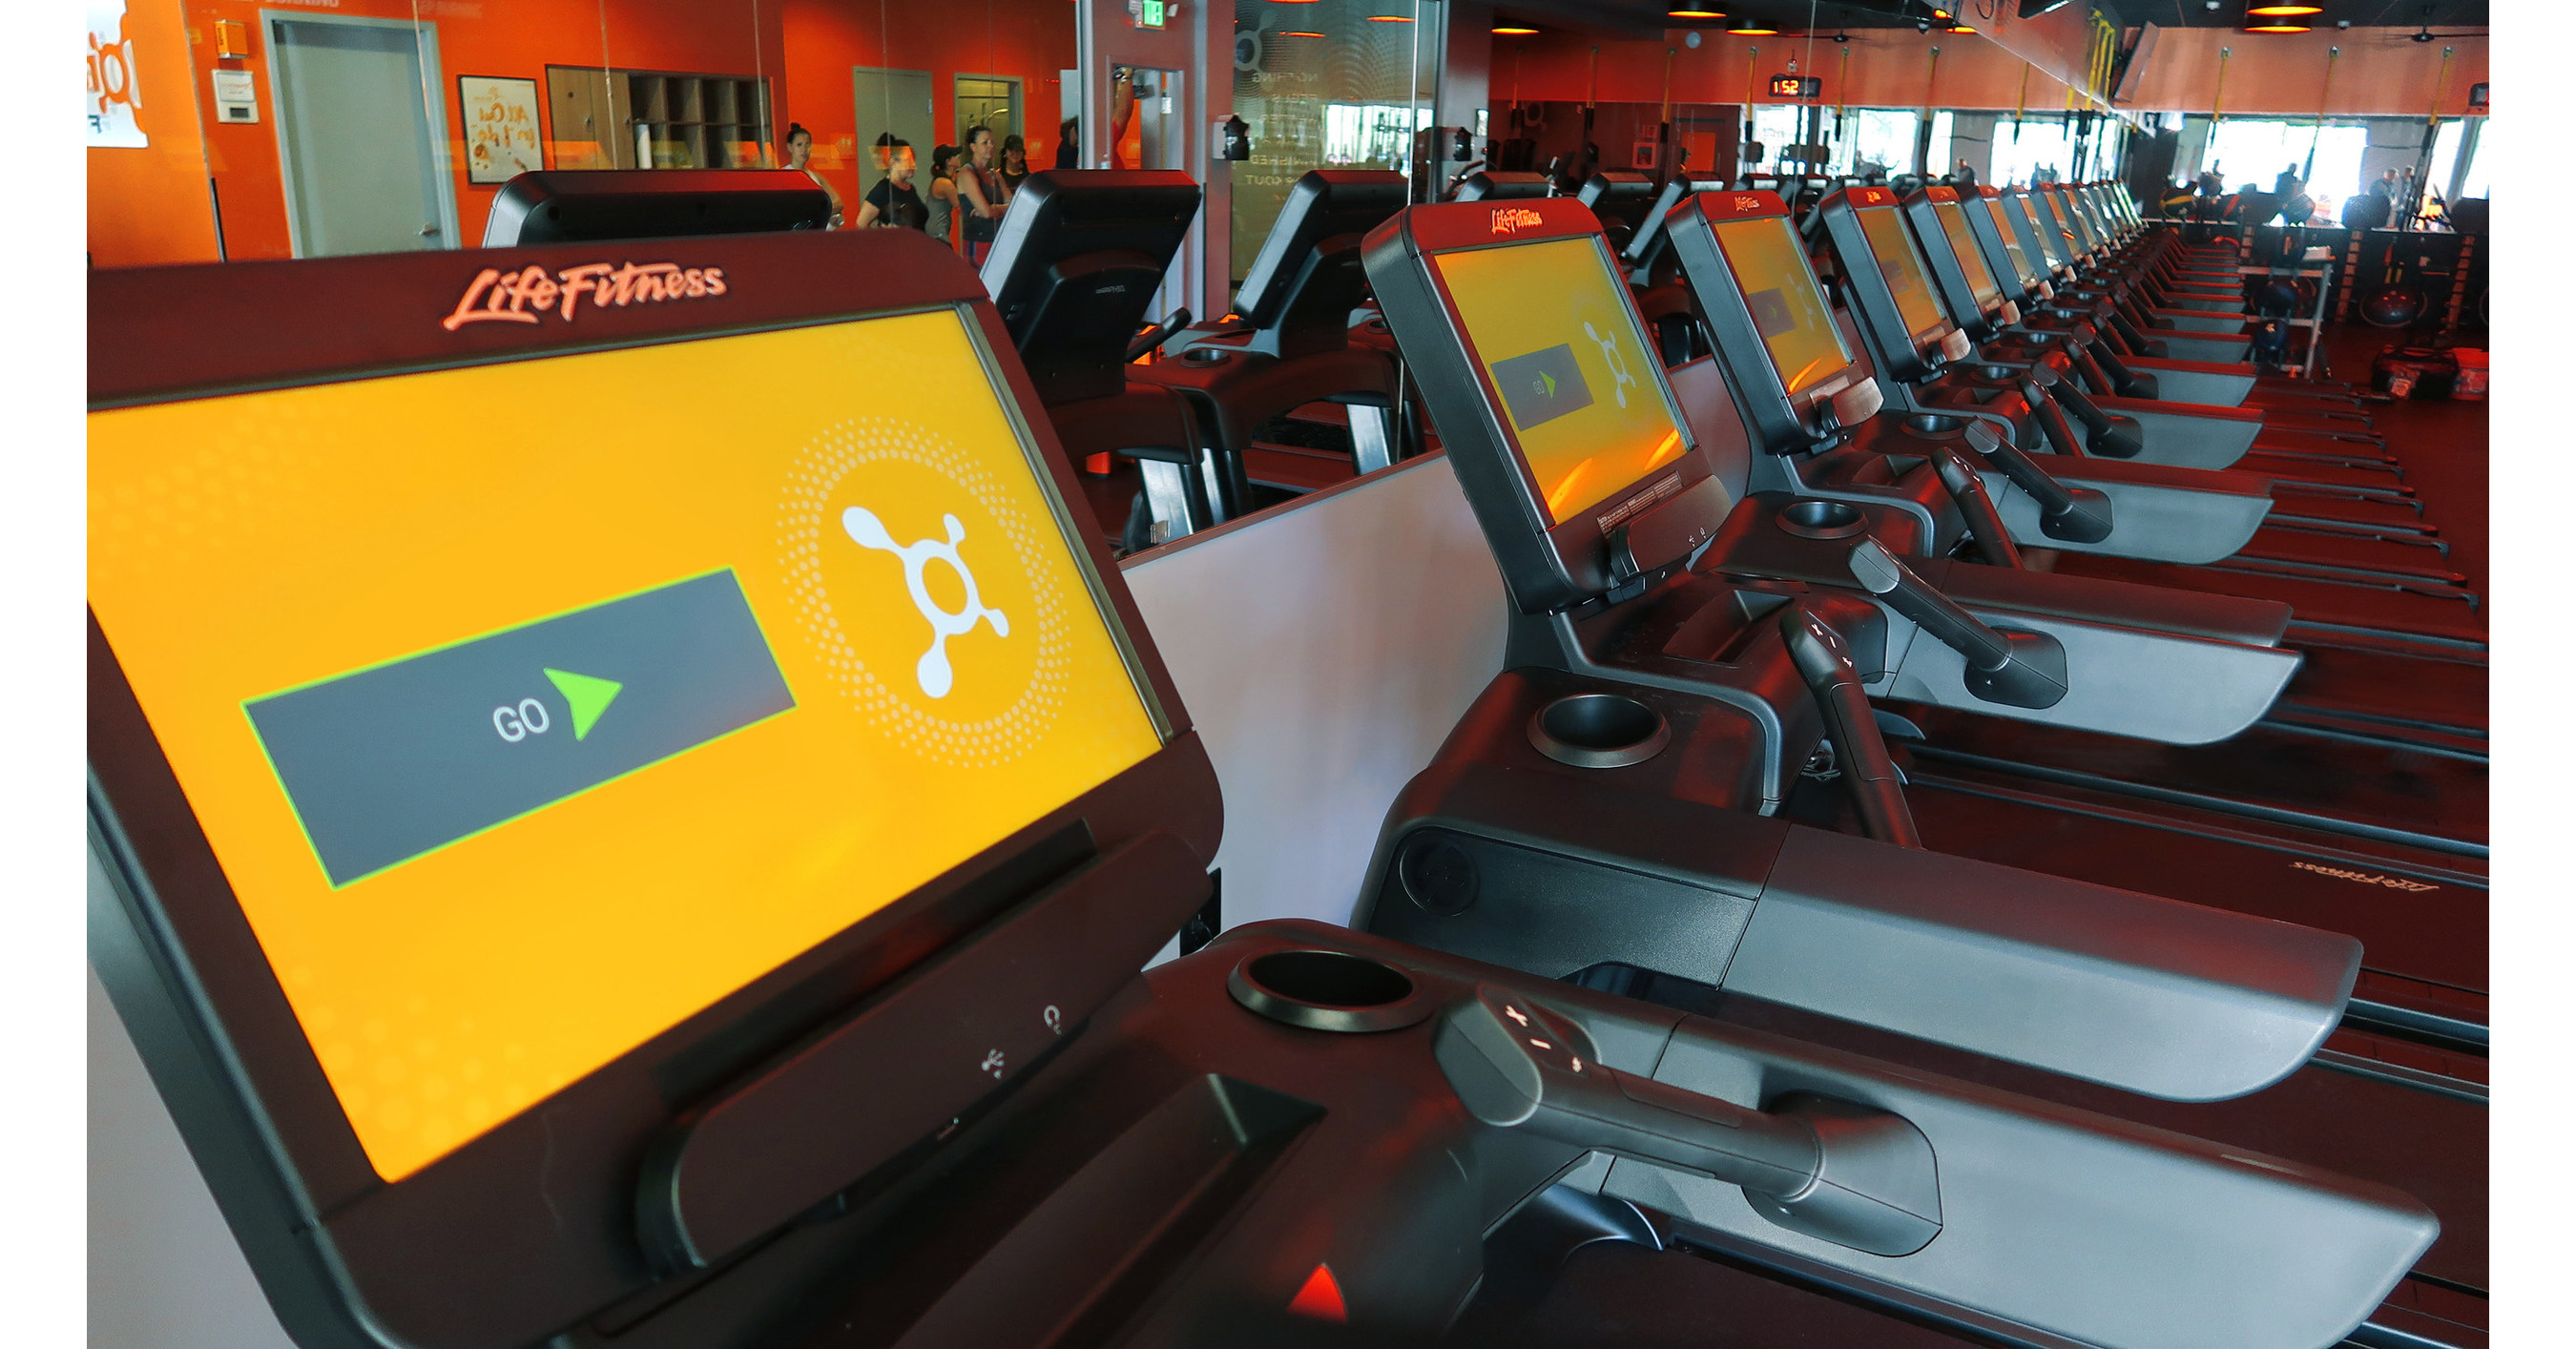 what treadmills do they use at orangetheory?